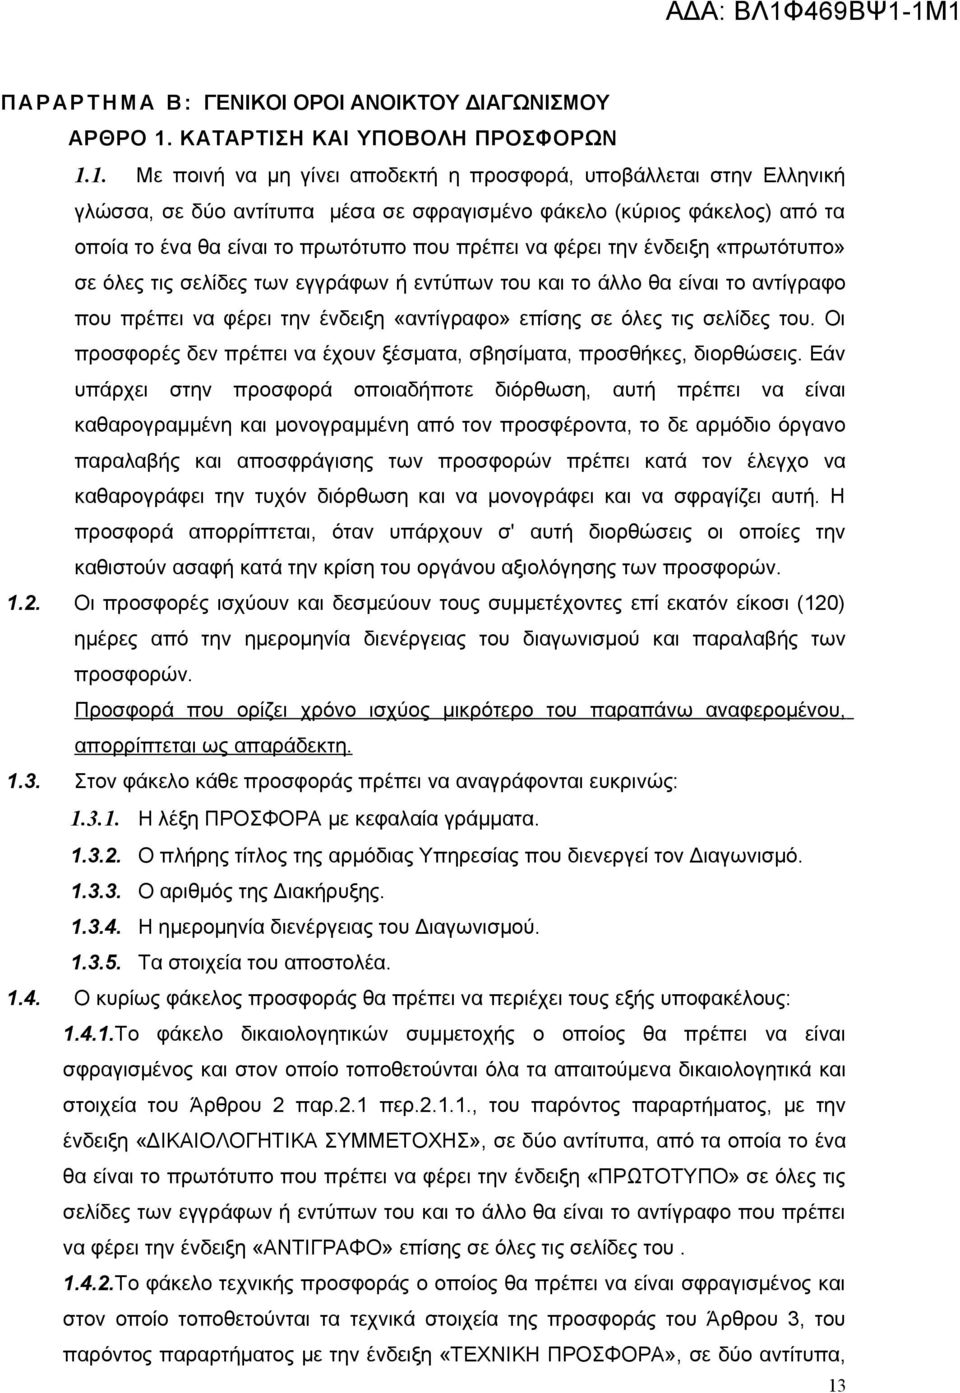 1. Με ποινή να μη γίνει αποδεκτή η προσφορά, υποβάλλεται στην Ελληνική γλώσσα, σε δύο αντίτυπα μέσα σε σφραγισμένο φάκελο (κύριος φάκελος) από τα οποία το ένα θα είναι το πρωτότυπο που πρέπει να